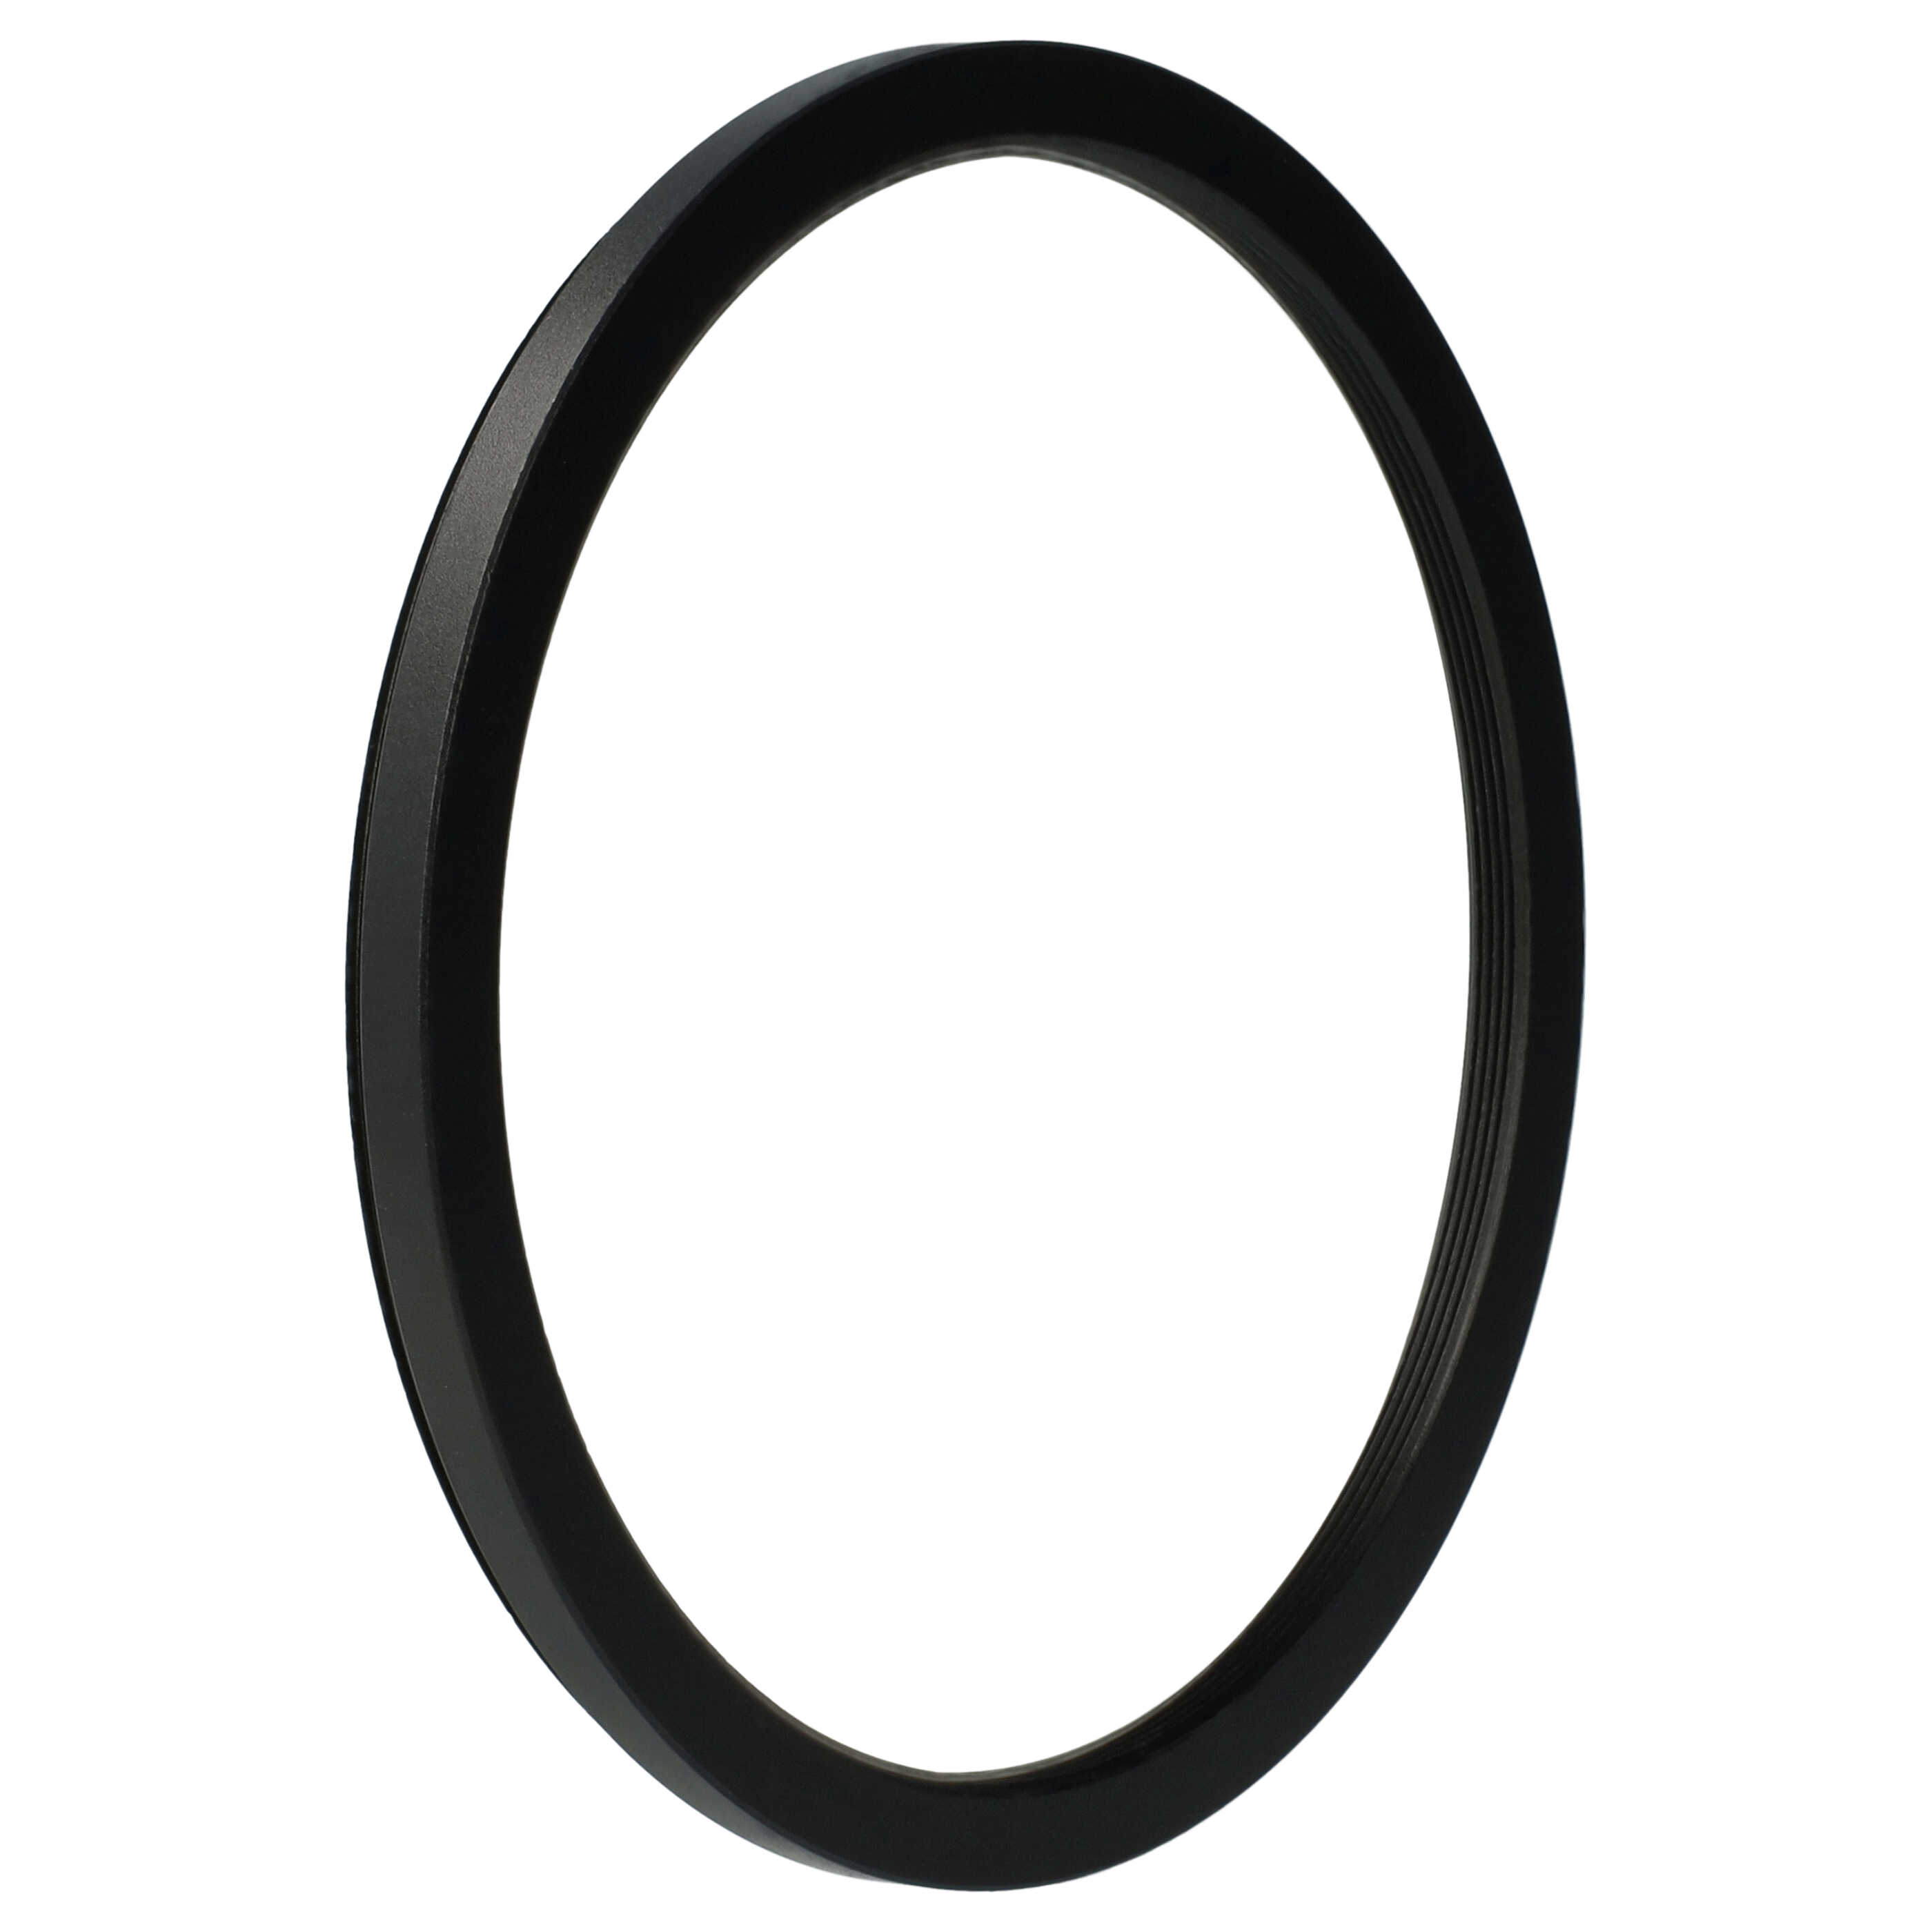 Anello adattatore step-down da 95 mm a 86 mm per obiettivo fotocamera - Adattatore filtro, metallo, nero